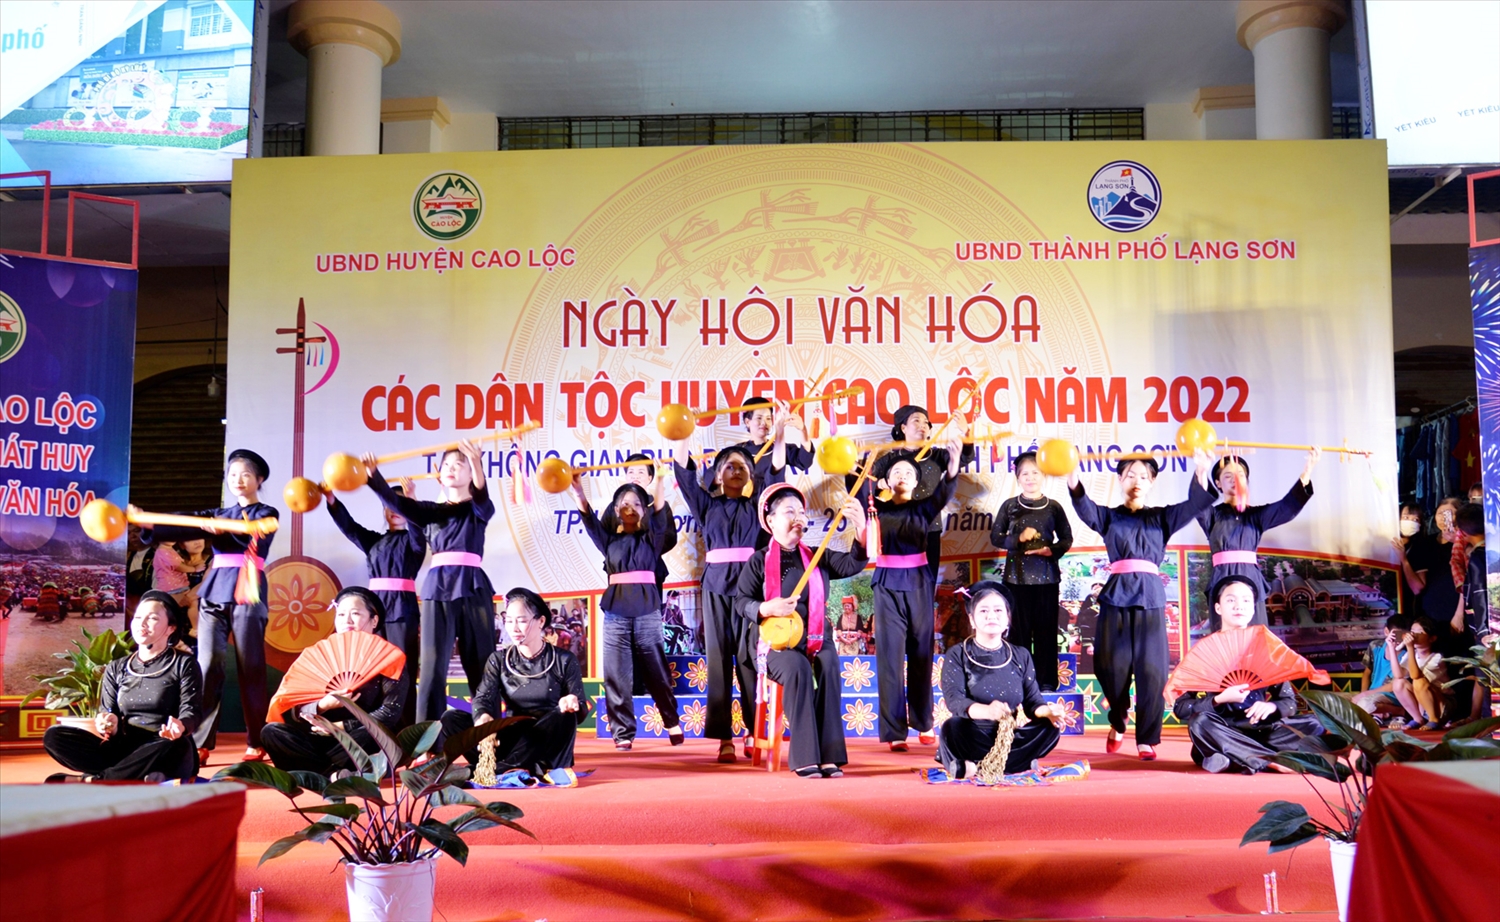 Các thành viên Câu lạc bộ Điếp Sli Then, xã Thụy Hùng, huyện Cao Lộc biểu diễn tiết mục hát Then, đàn tính 